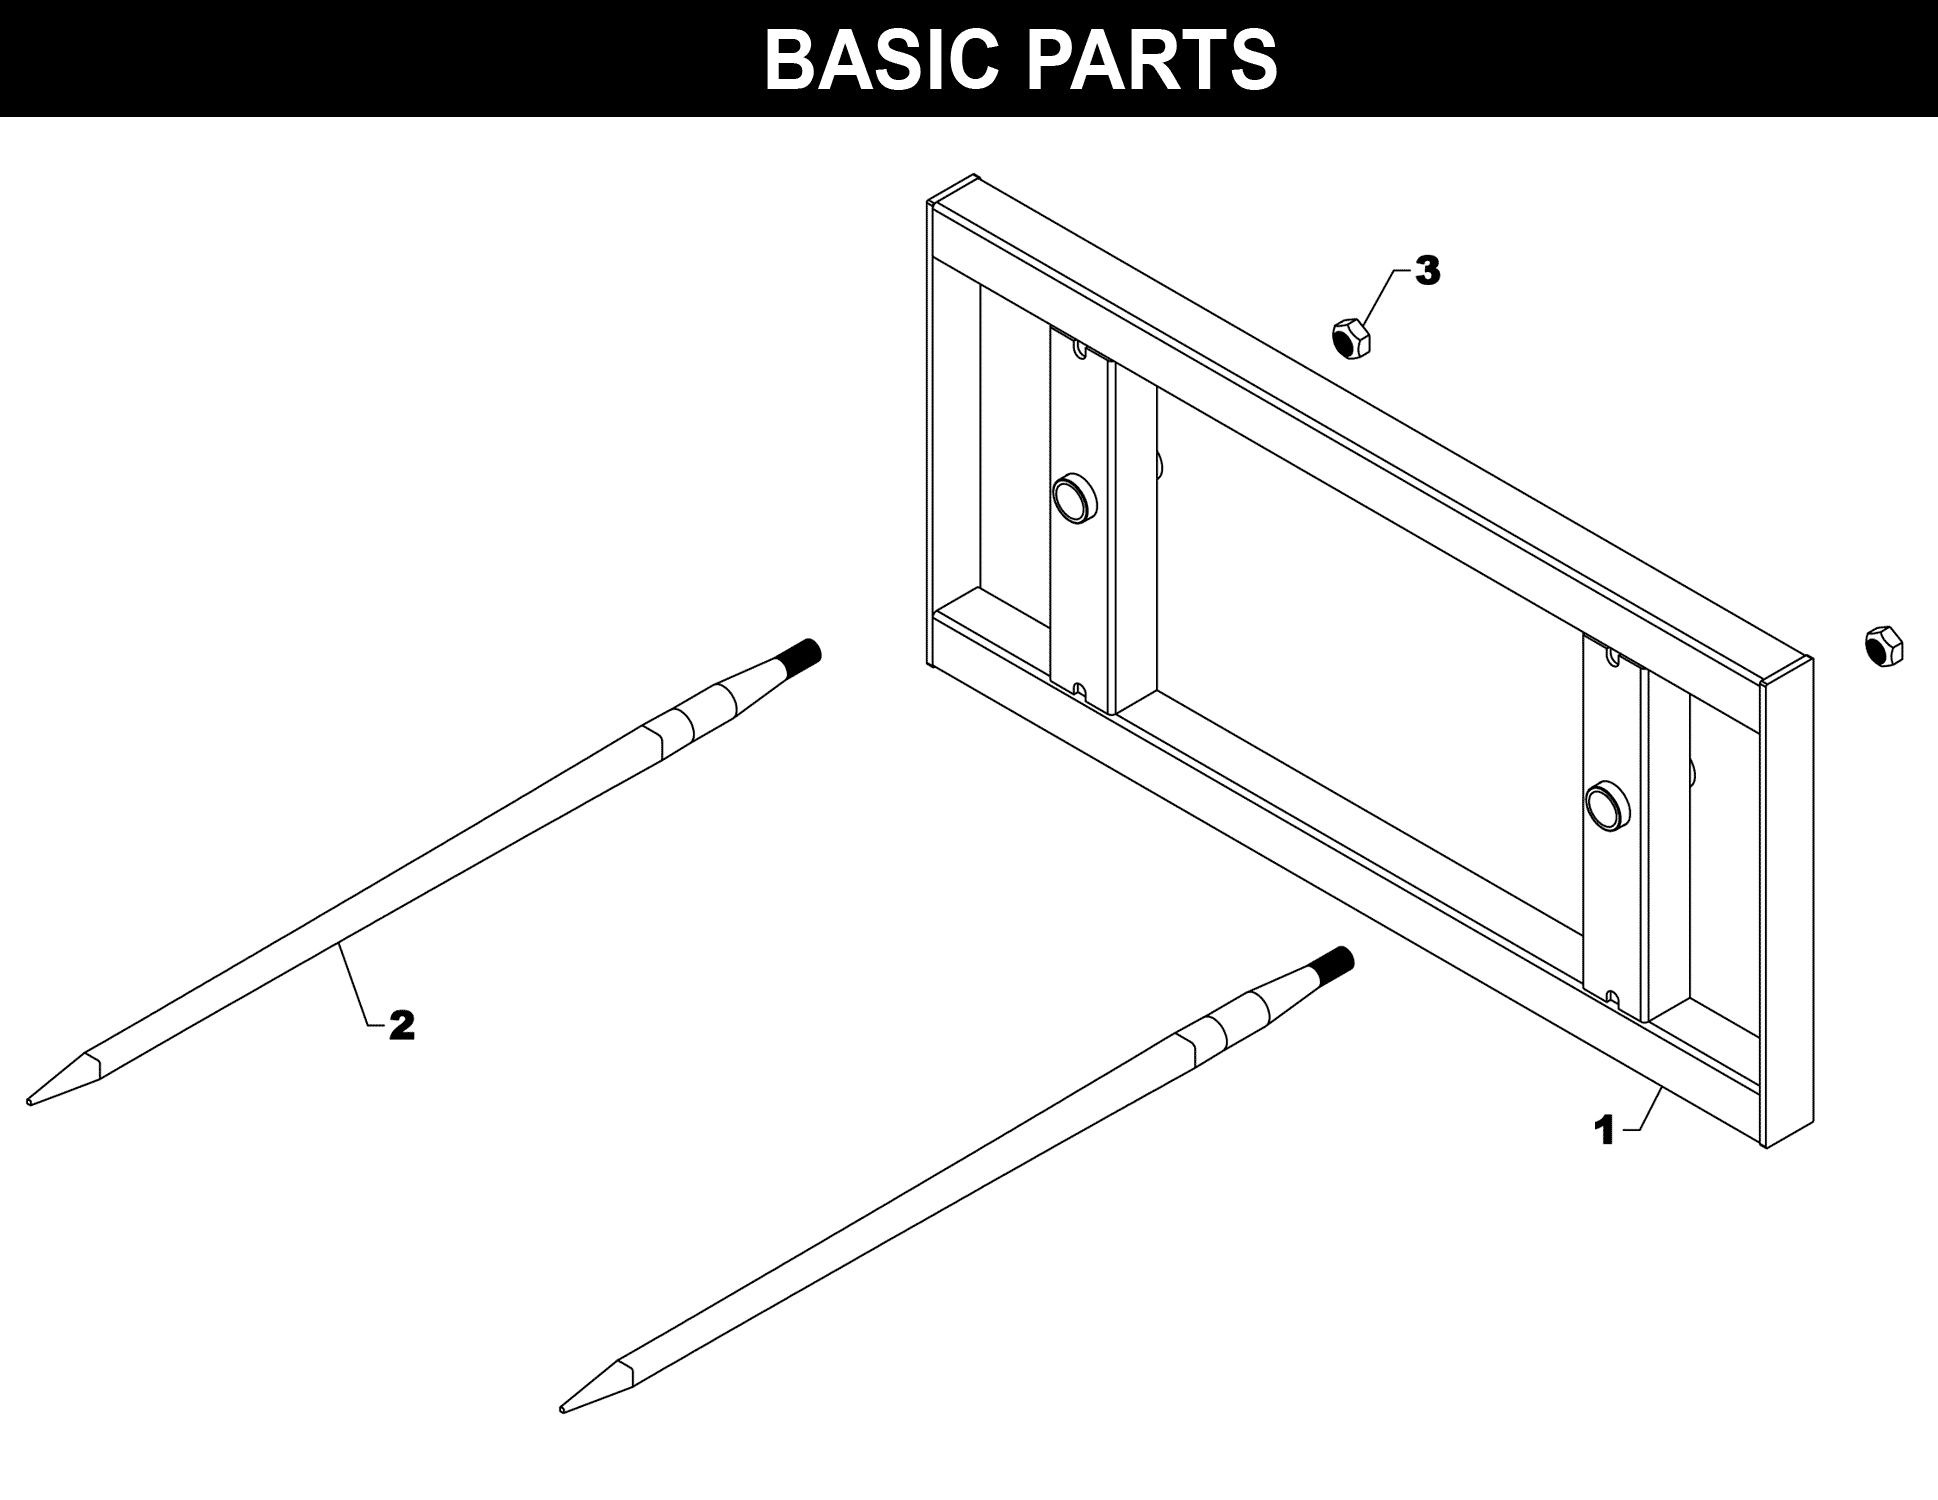 SP-42 Basic Parts